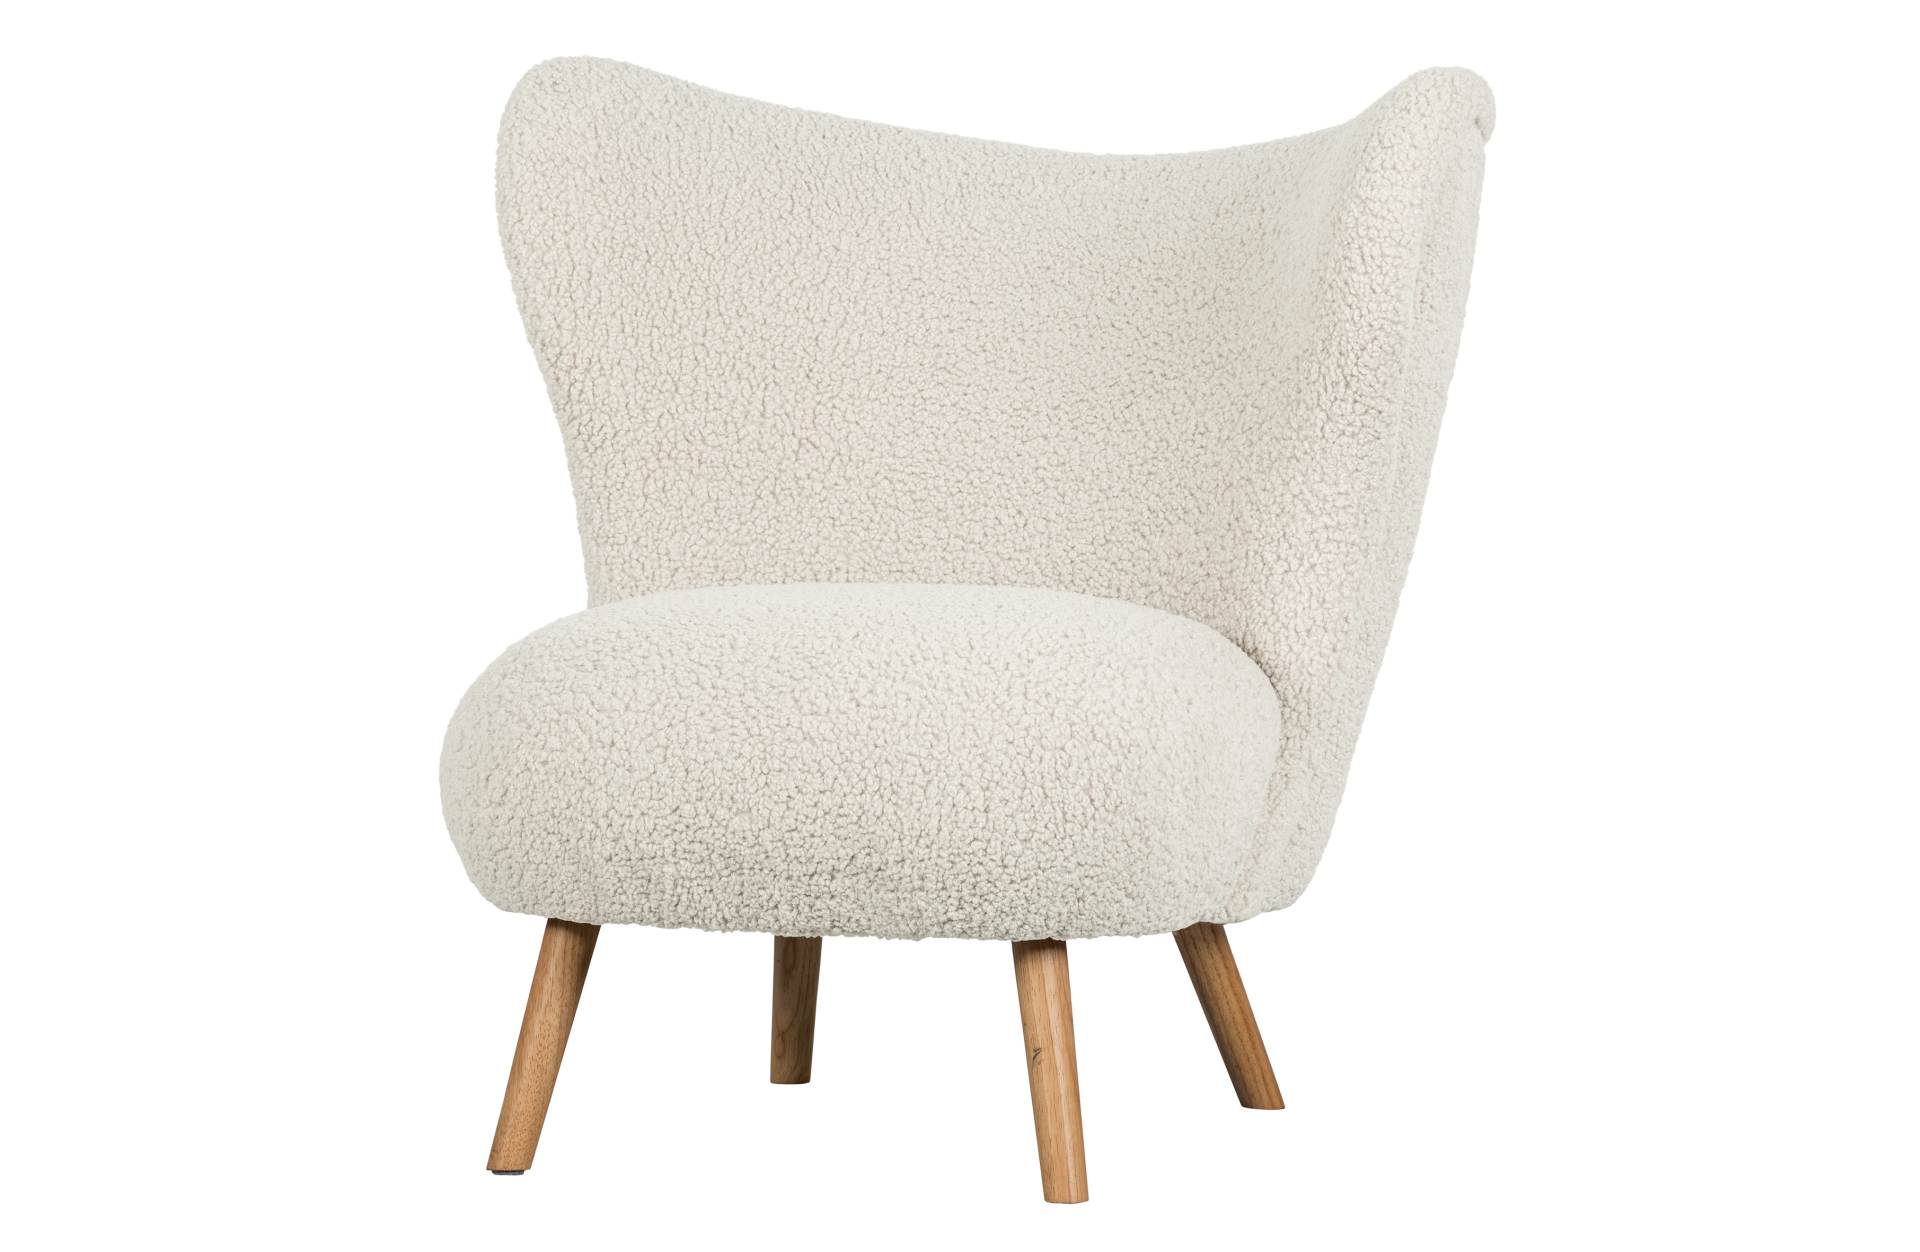 Der Sessel Celine in einem Teddystoff überzeugt mit seinem niedlichen Design. Der Sessel ist in einem weißen Farbton.